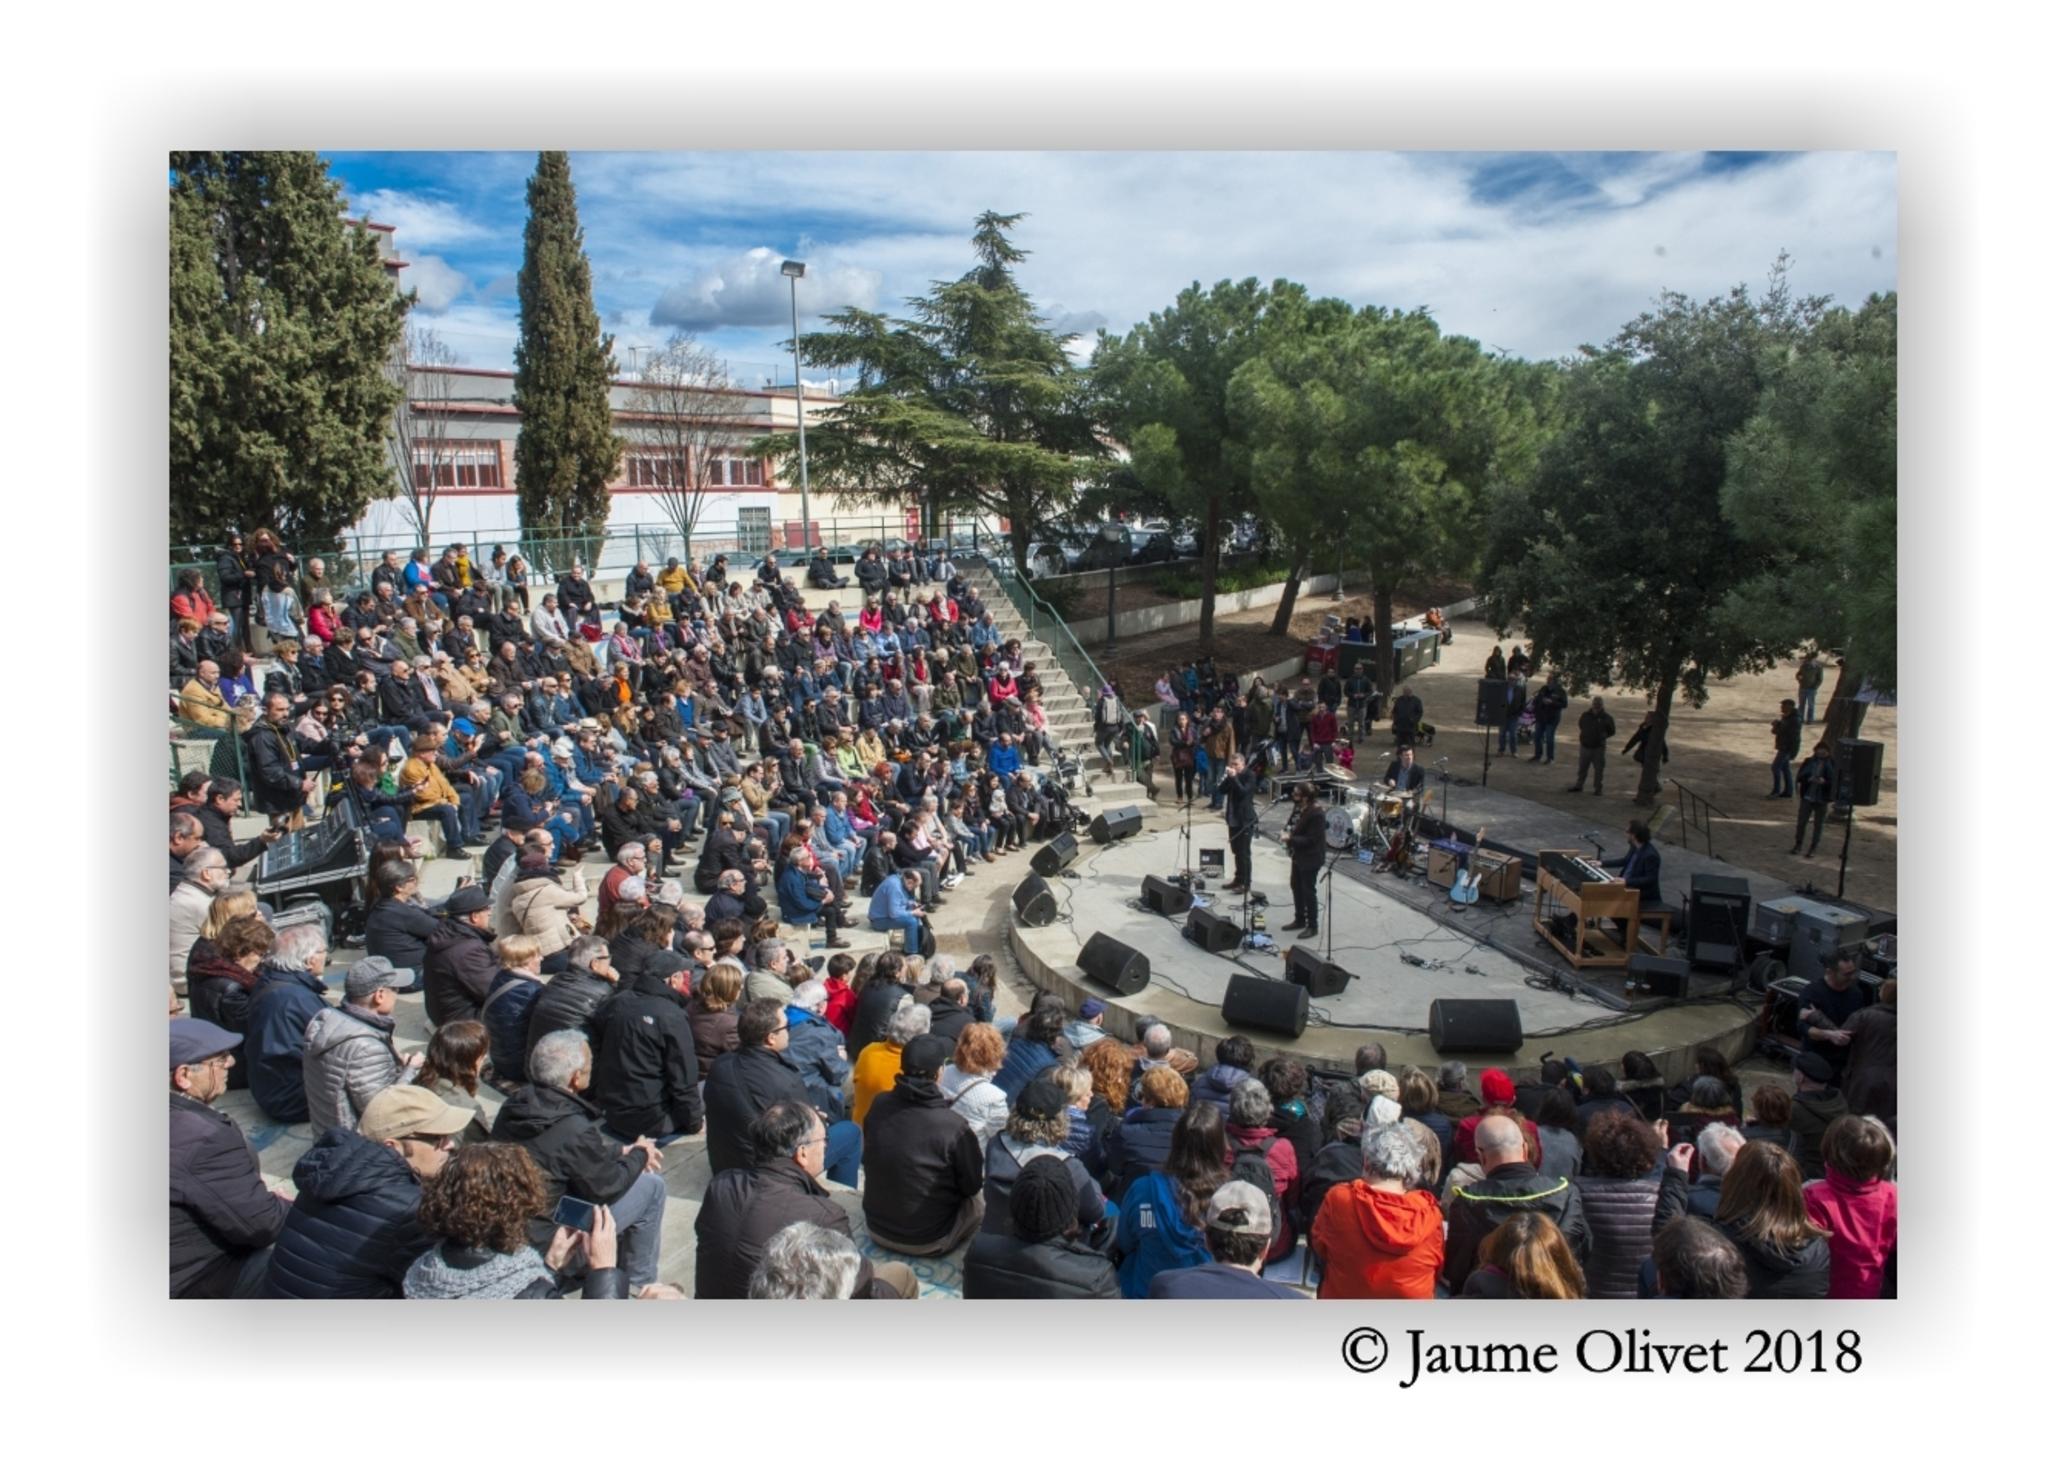 © Jaume Olivet 2018